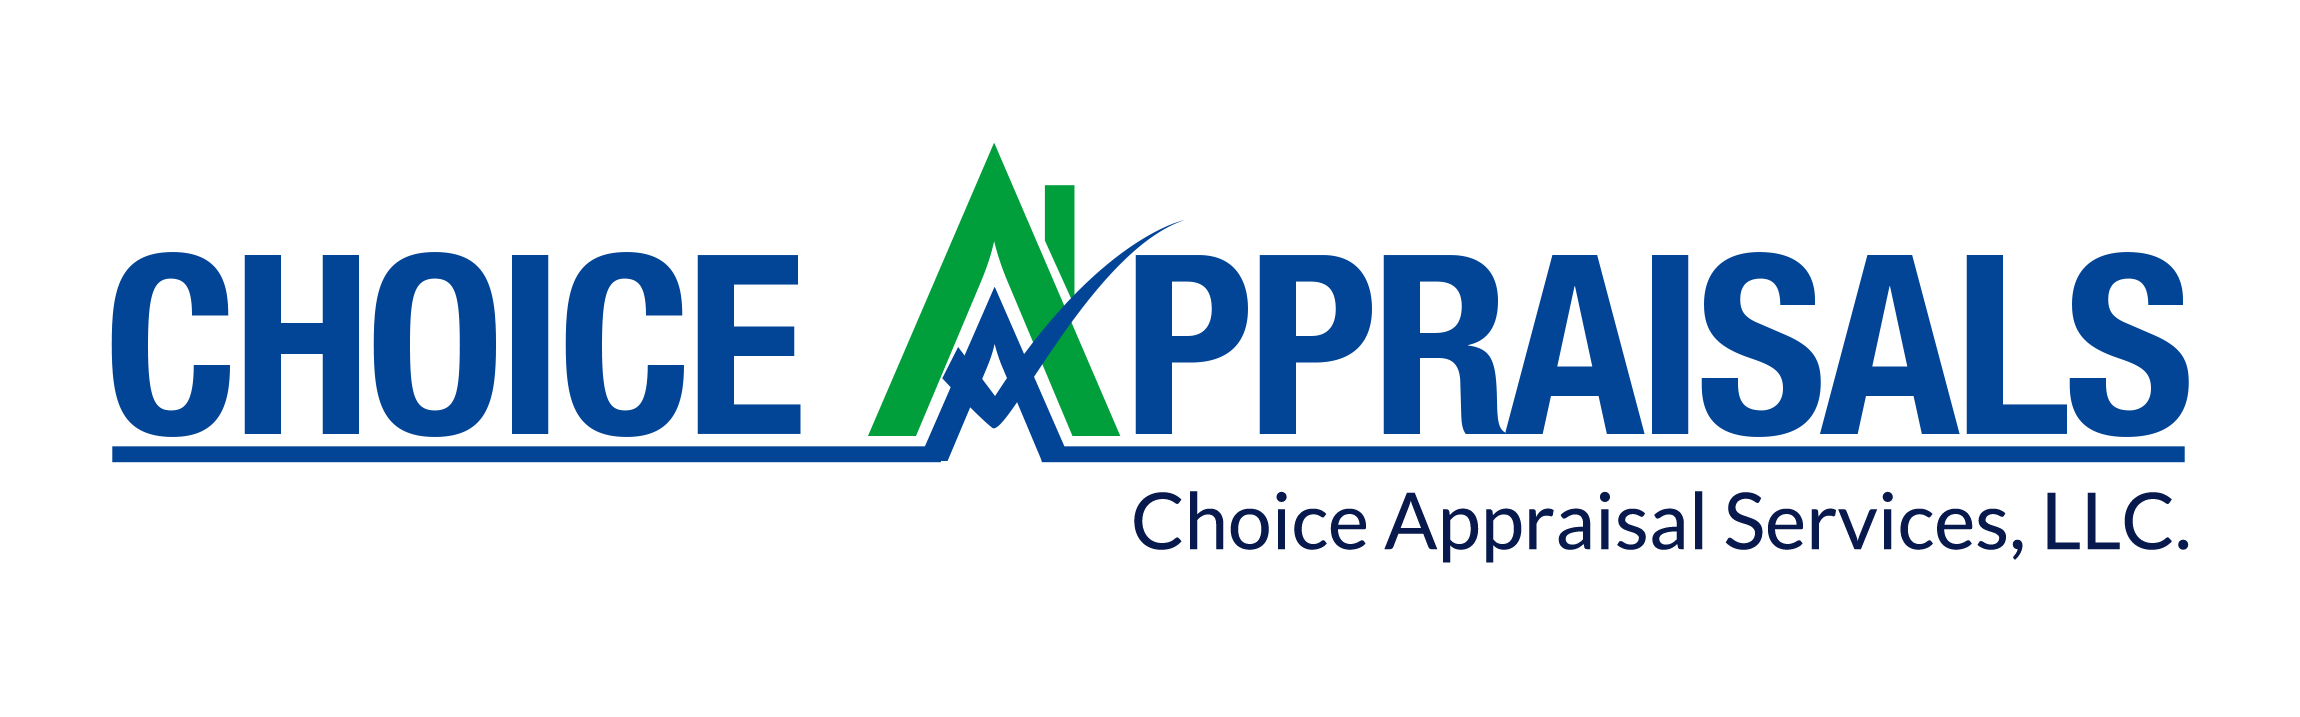 Choice Appraisal Services Logo